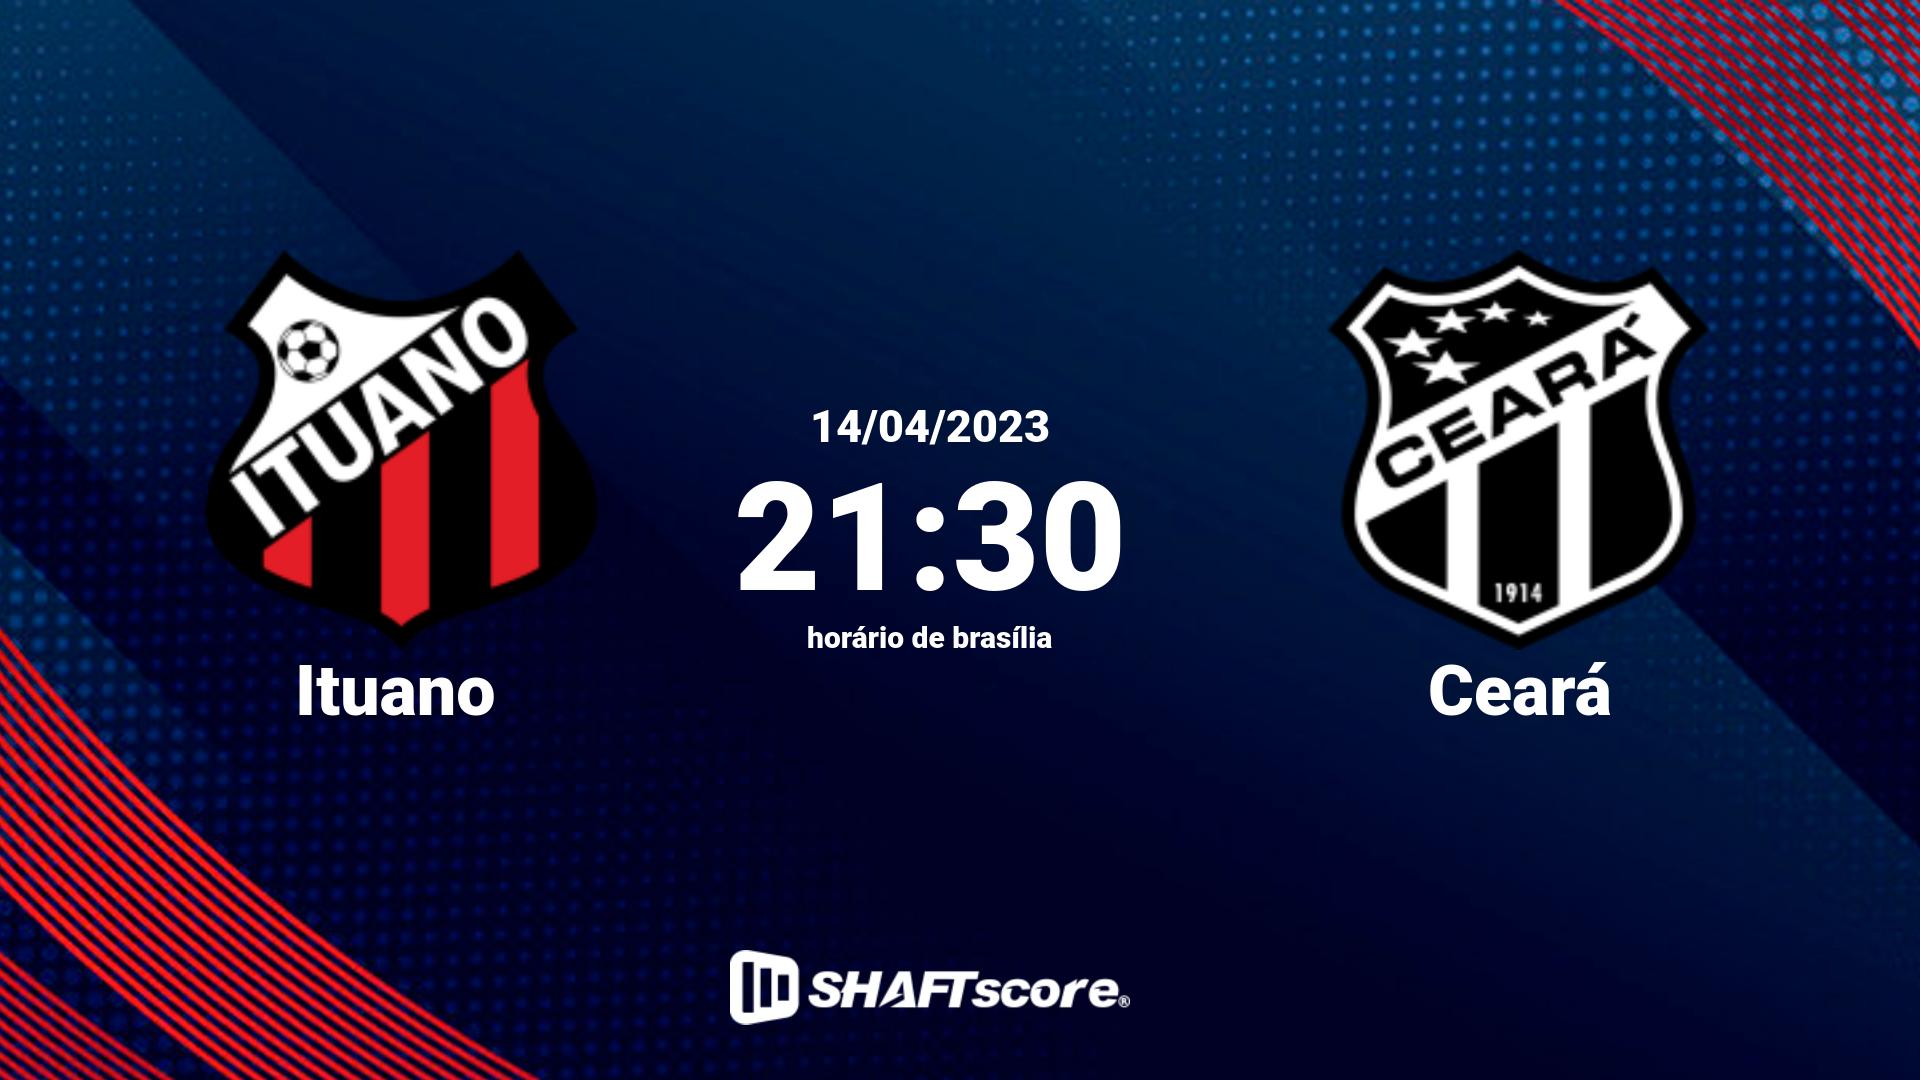 Estatísticas do jogo Ituano vs Ceará 14.04 21:30